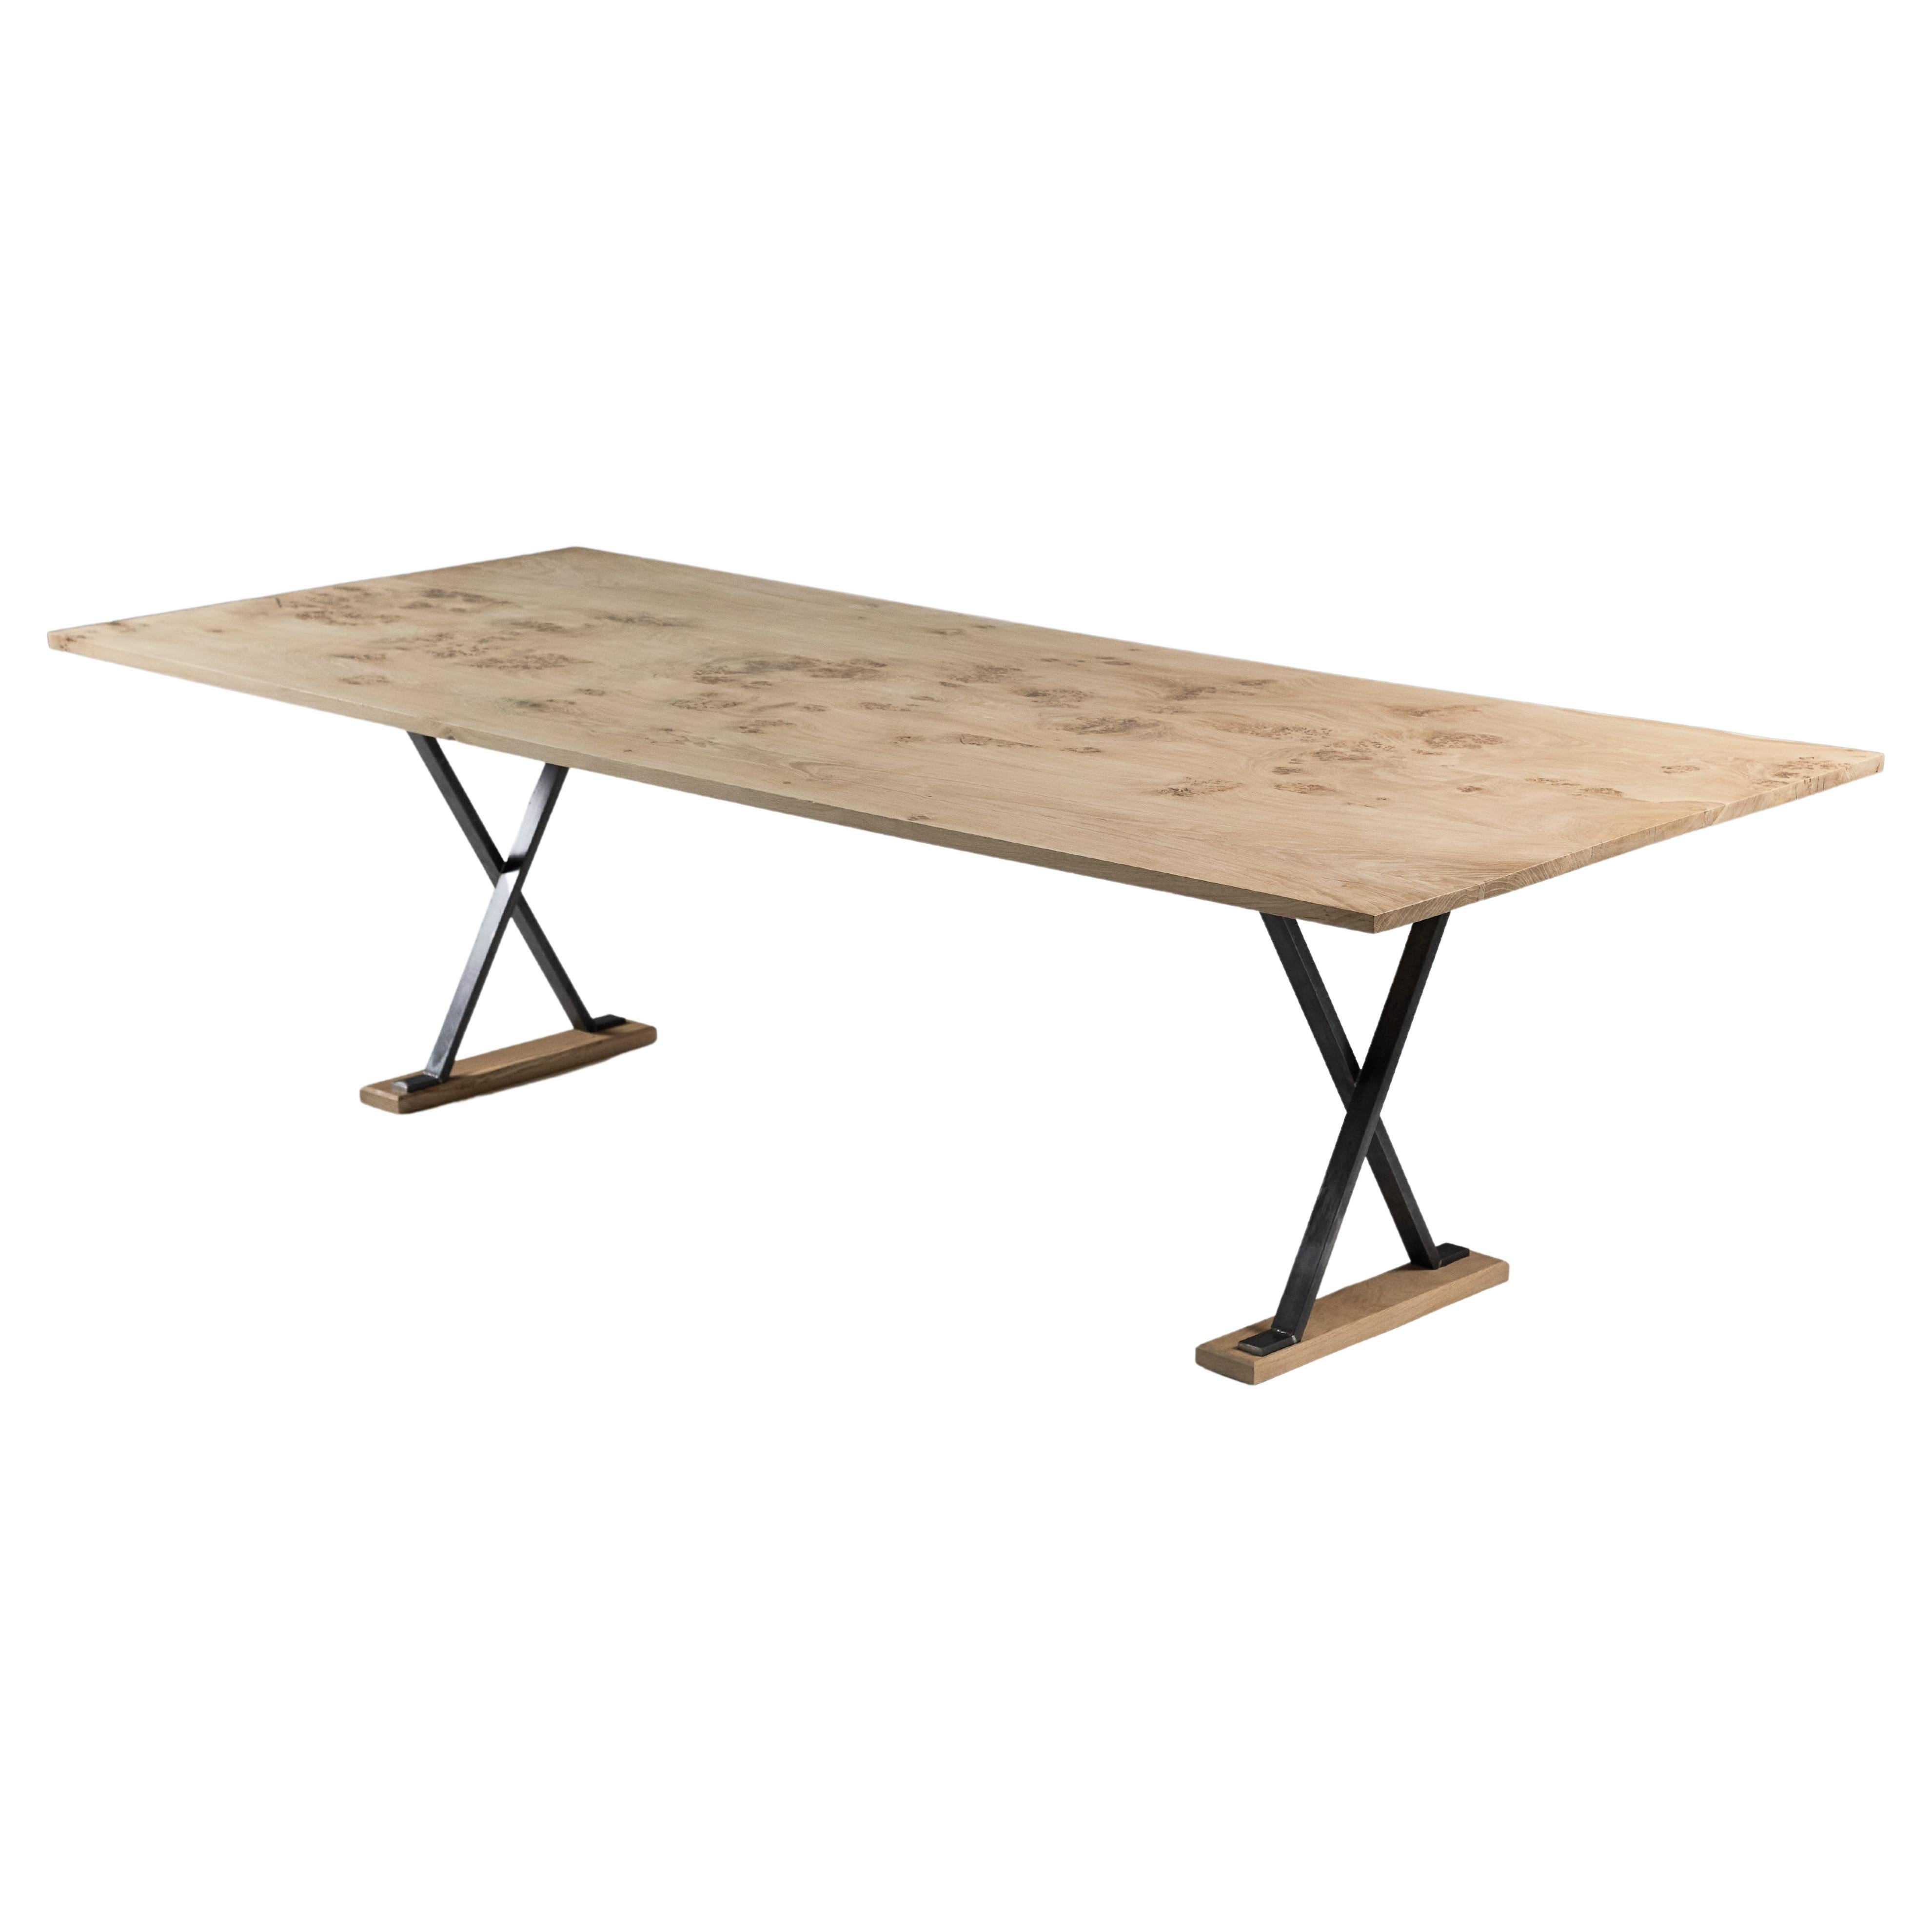 Oak table with black waxed steel cross Legs by Jonathan Field 